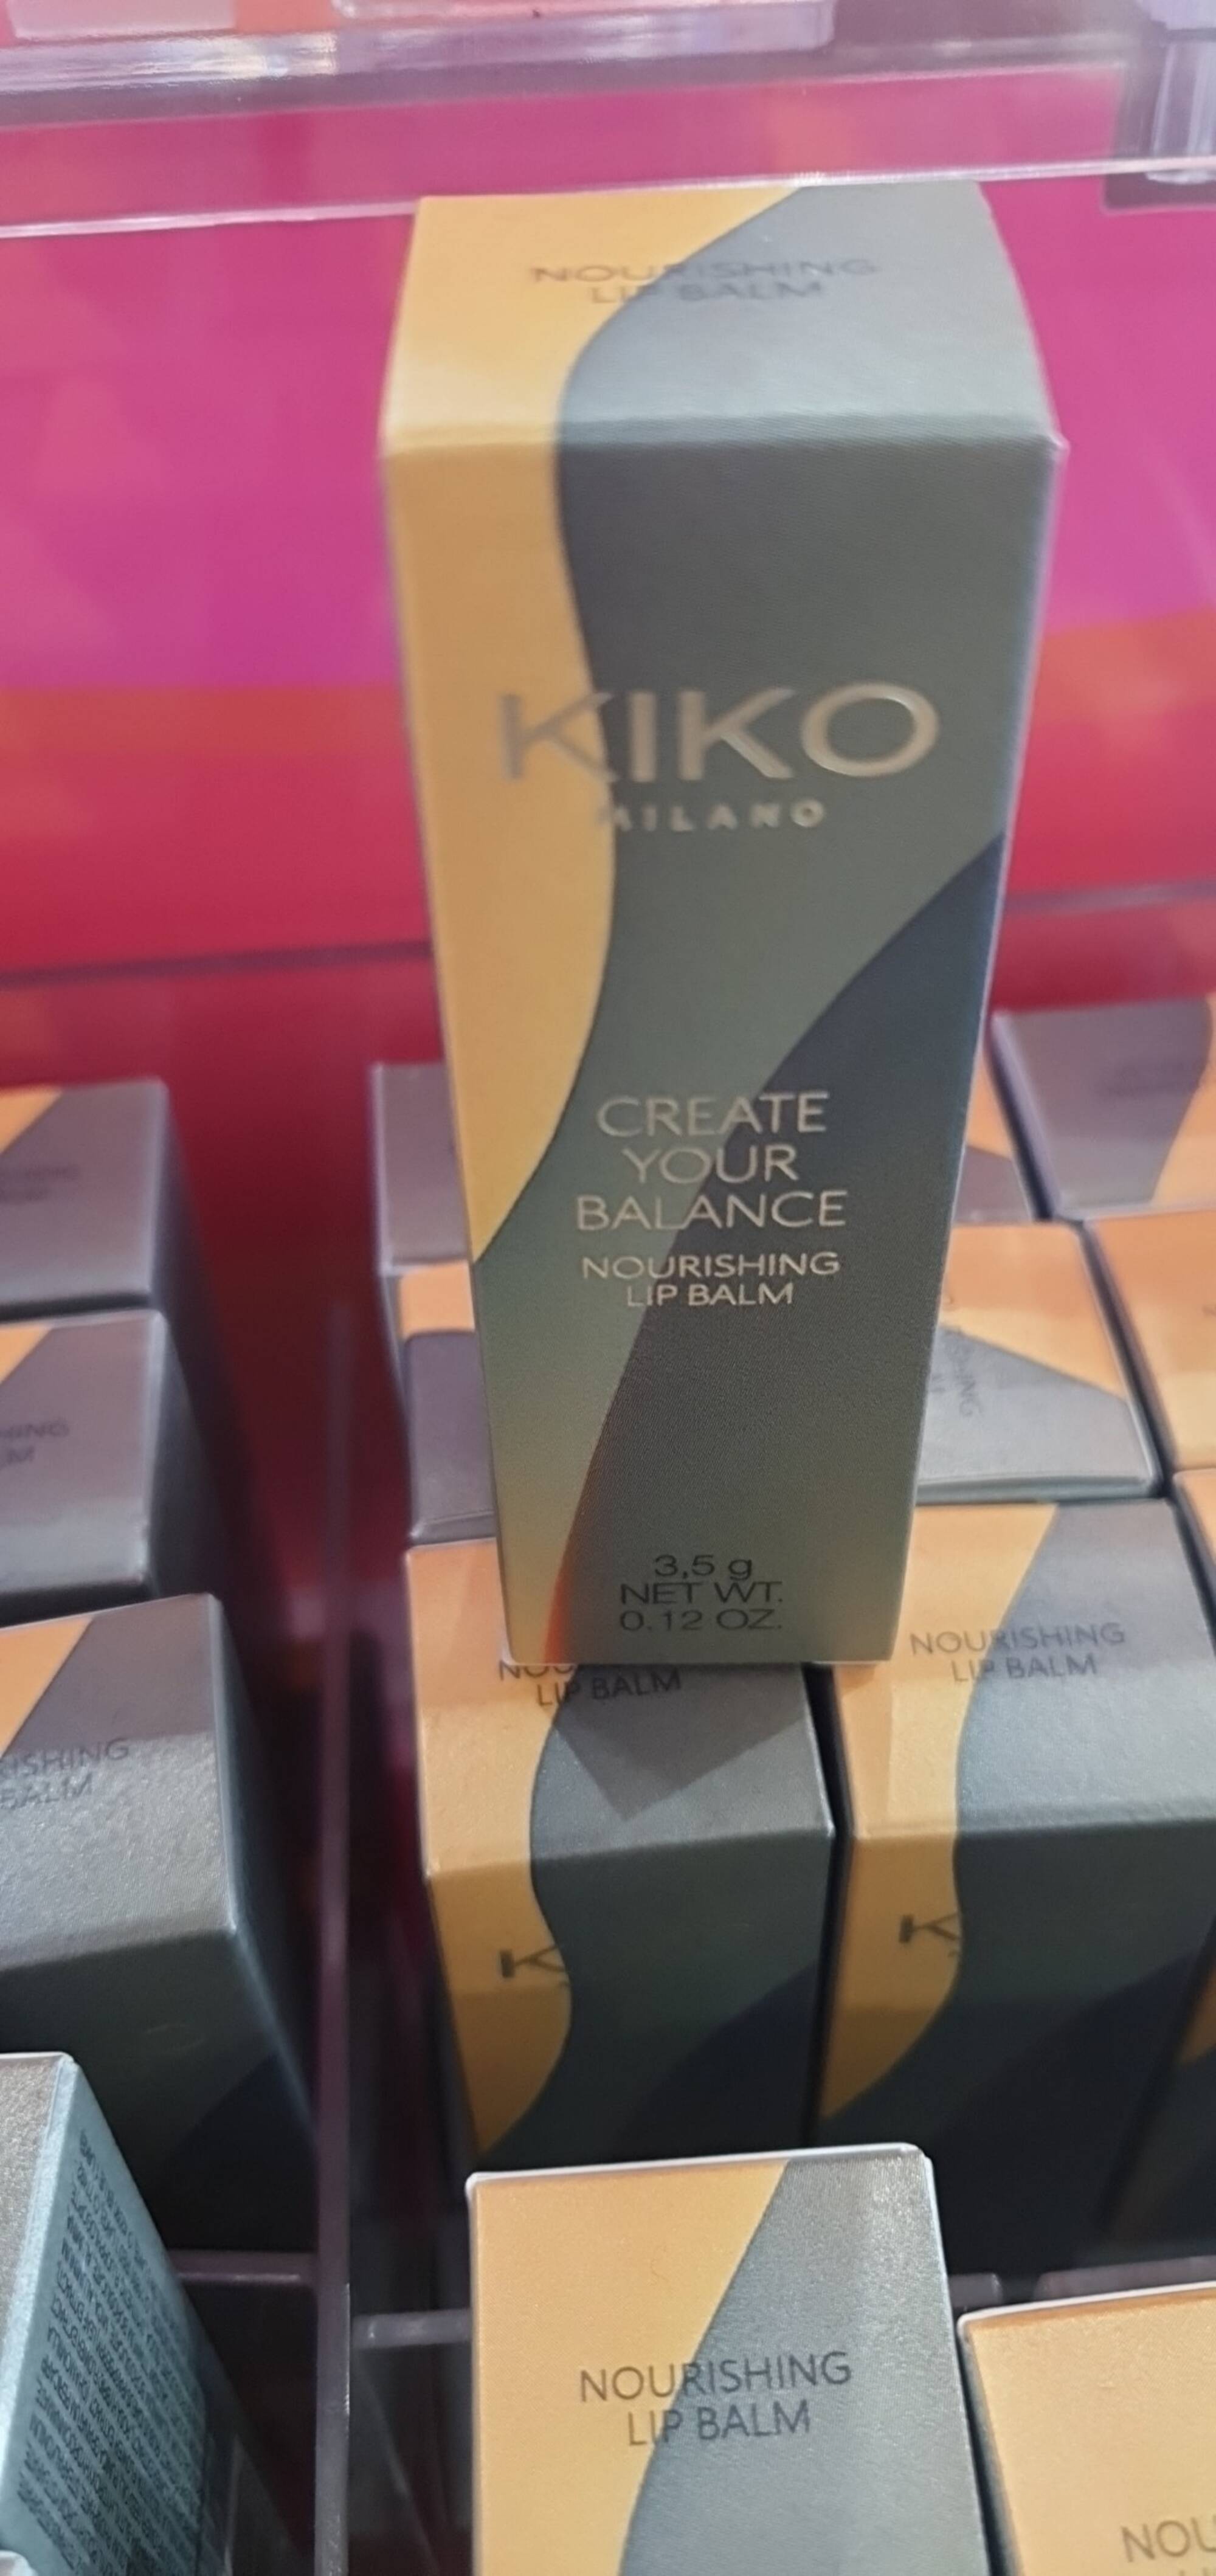 KIKO - Create your balance - Lip balm